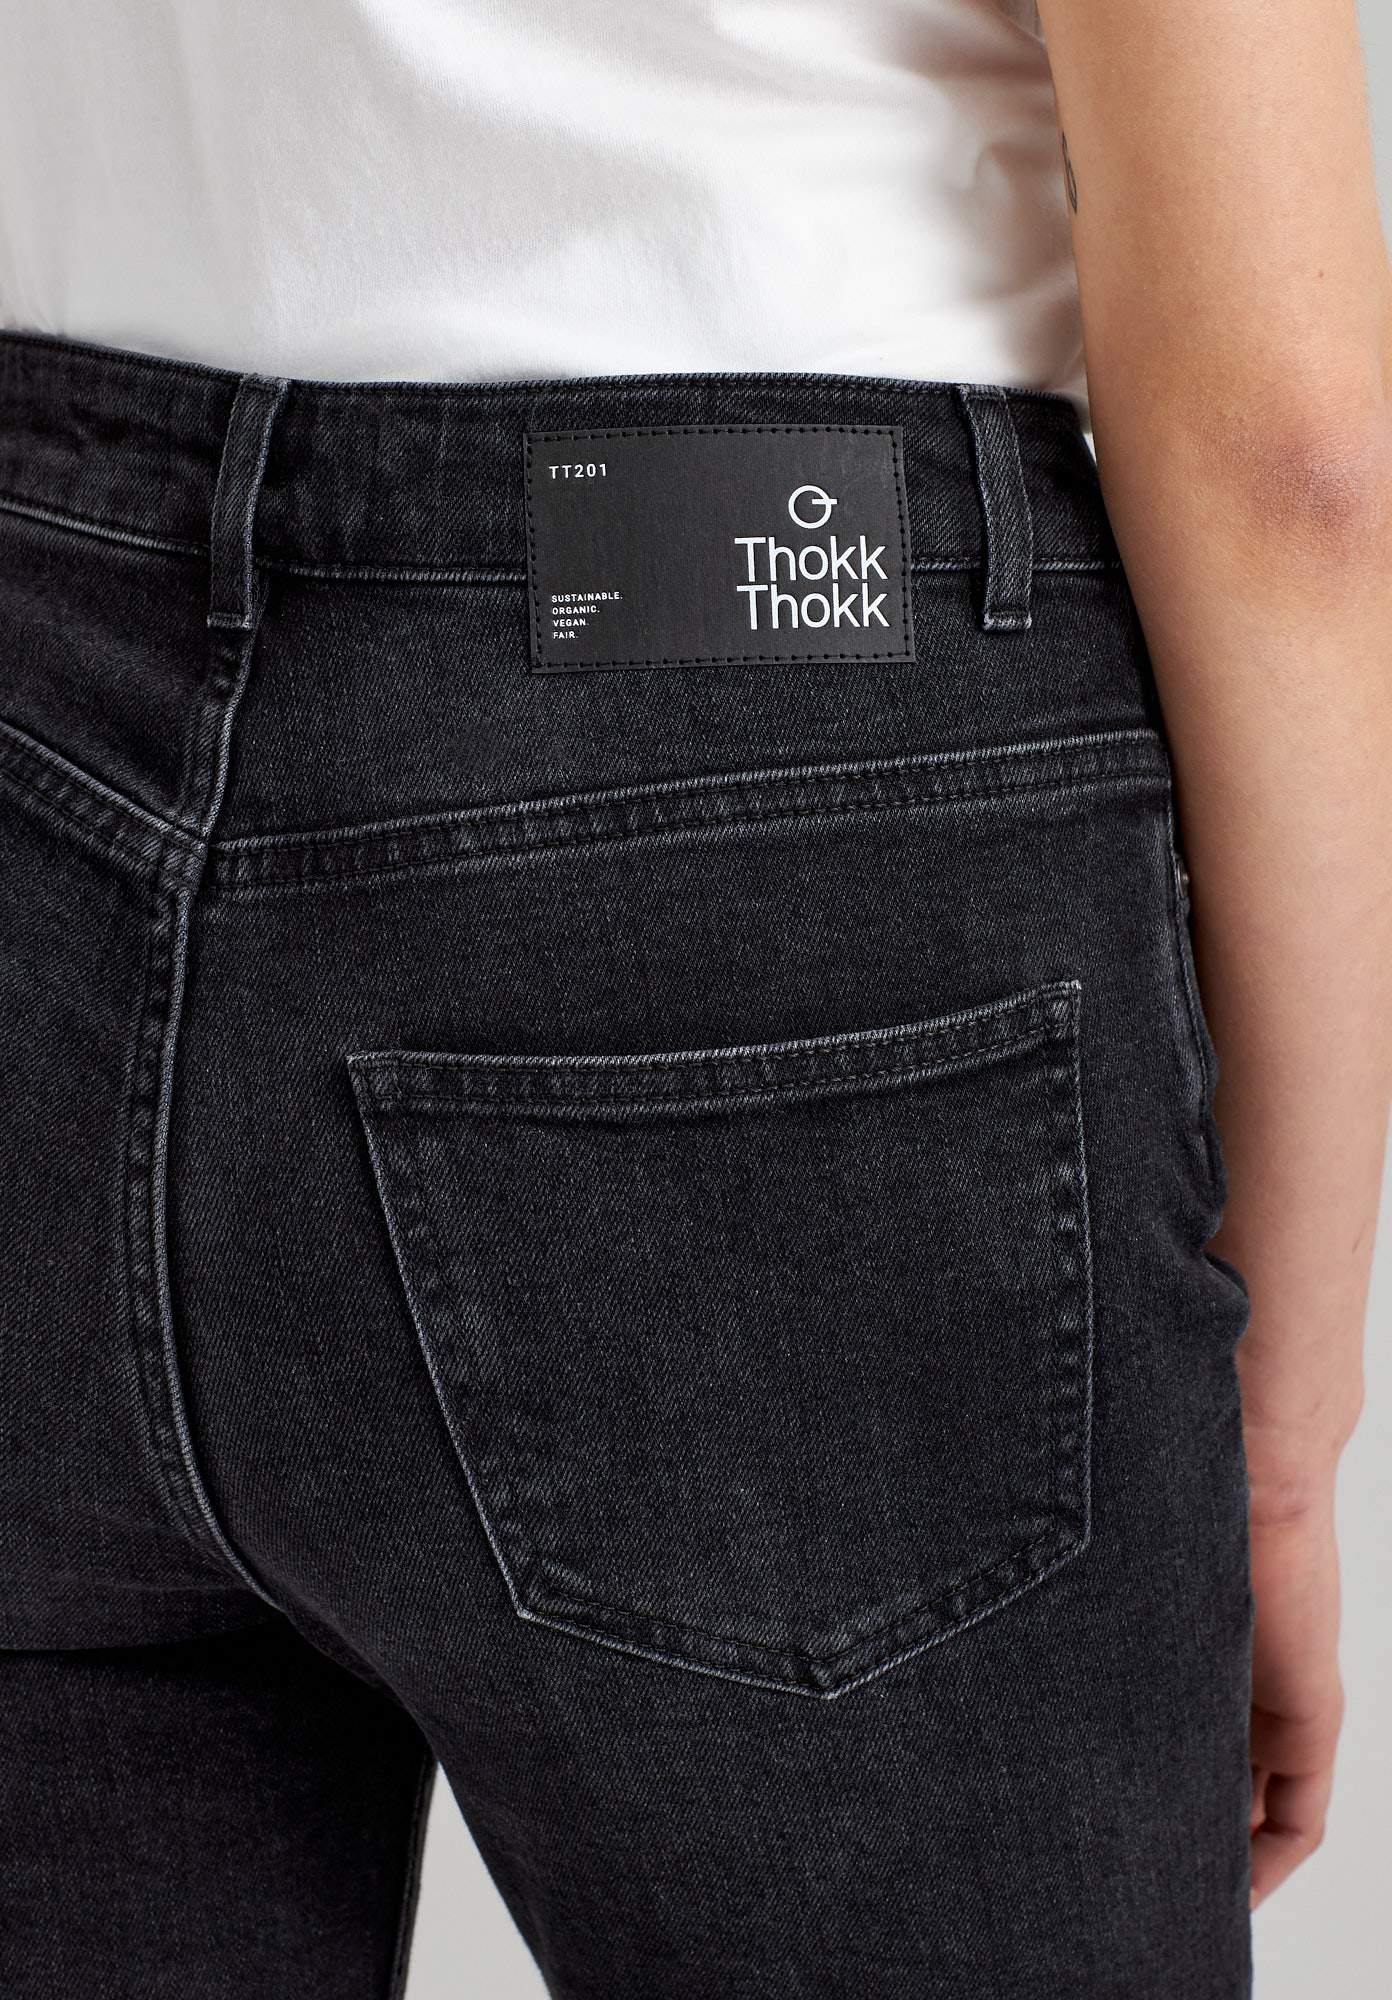 ThokkThokk - TT201 Skinny Jeans - Nahmoo